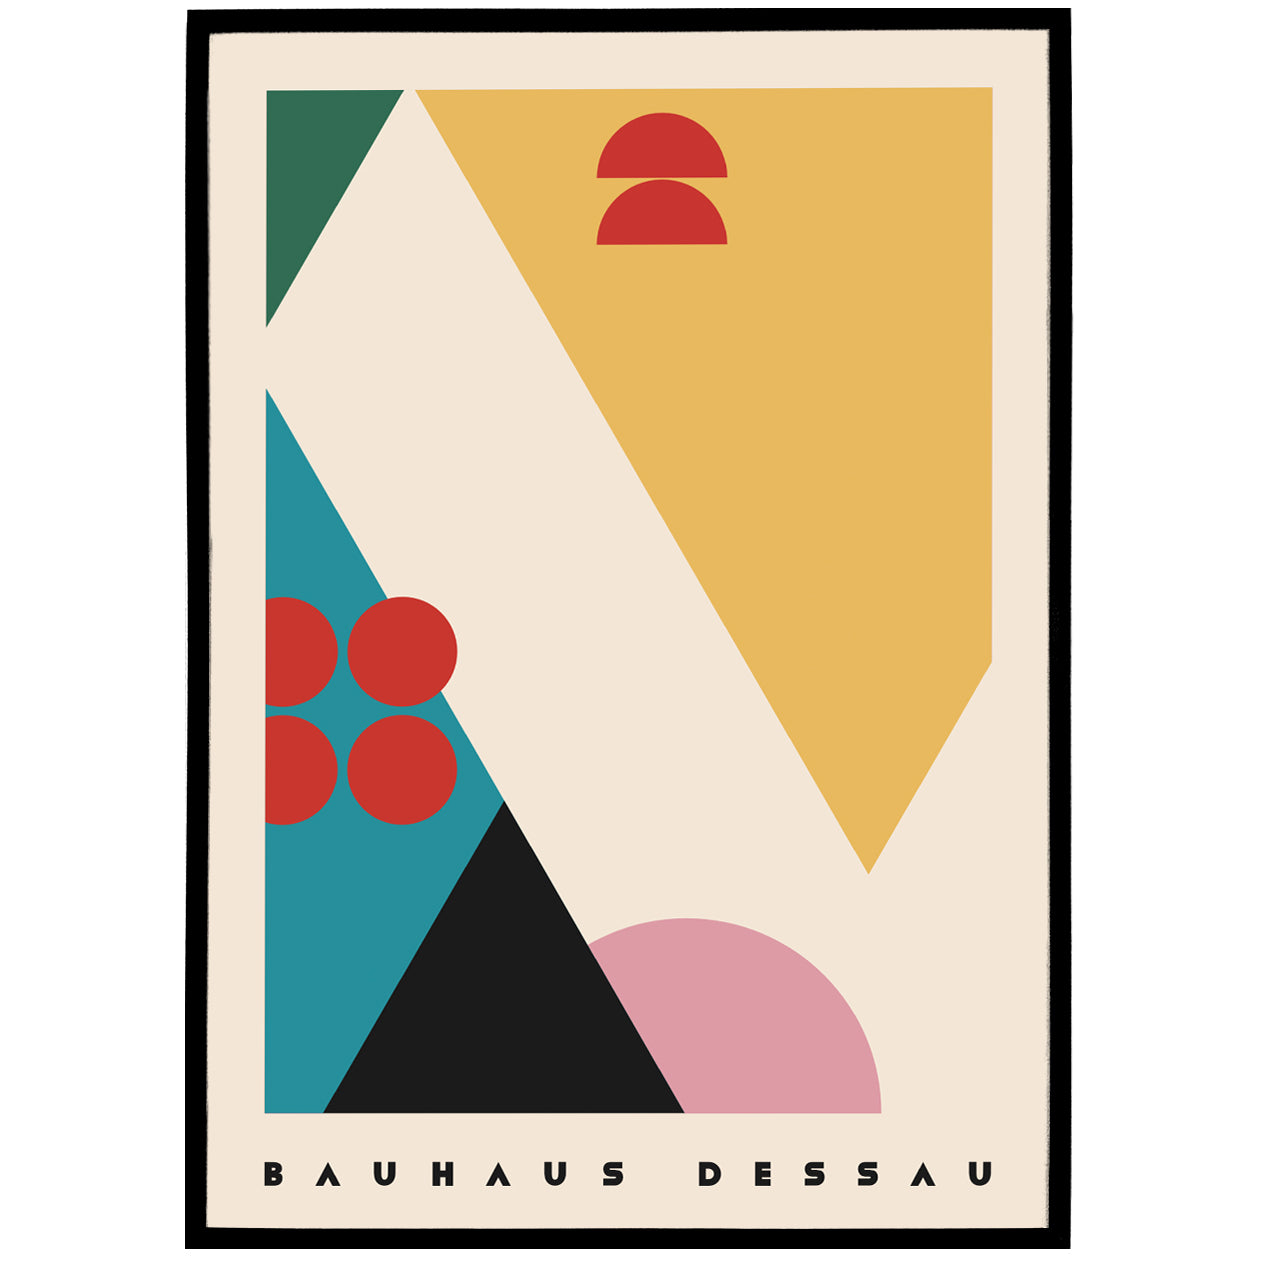 Retro Bauhaus Dessau Poster